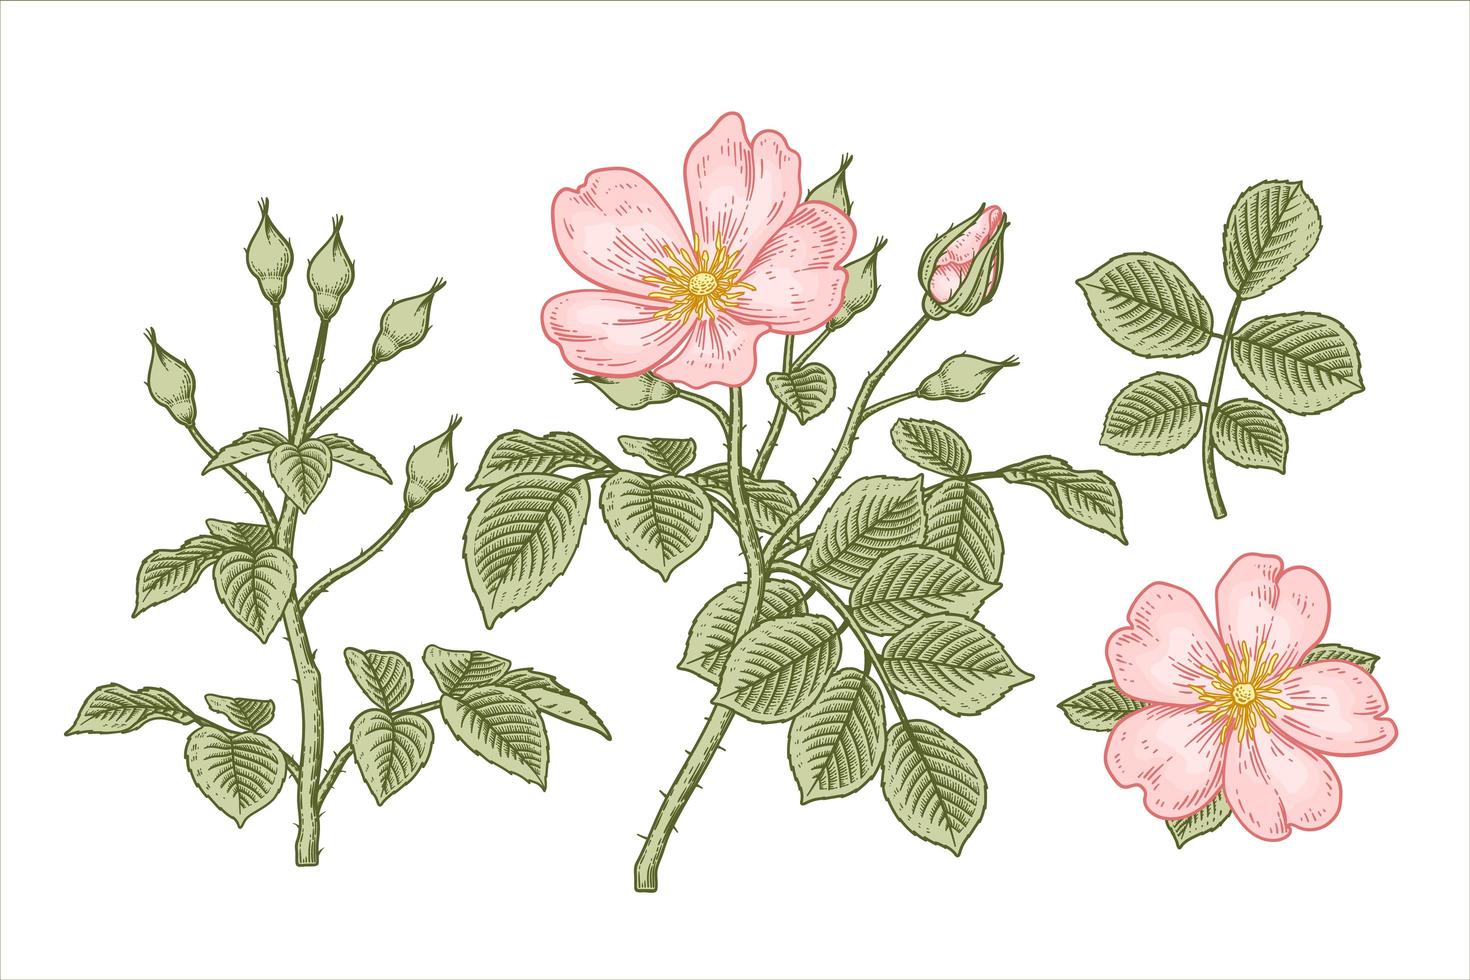 tak van roze hondsroos of rosa canina met bloem en bladeren hand getrokken elementen botanische illustraties vector